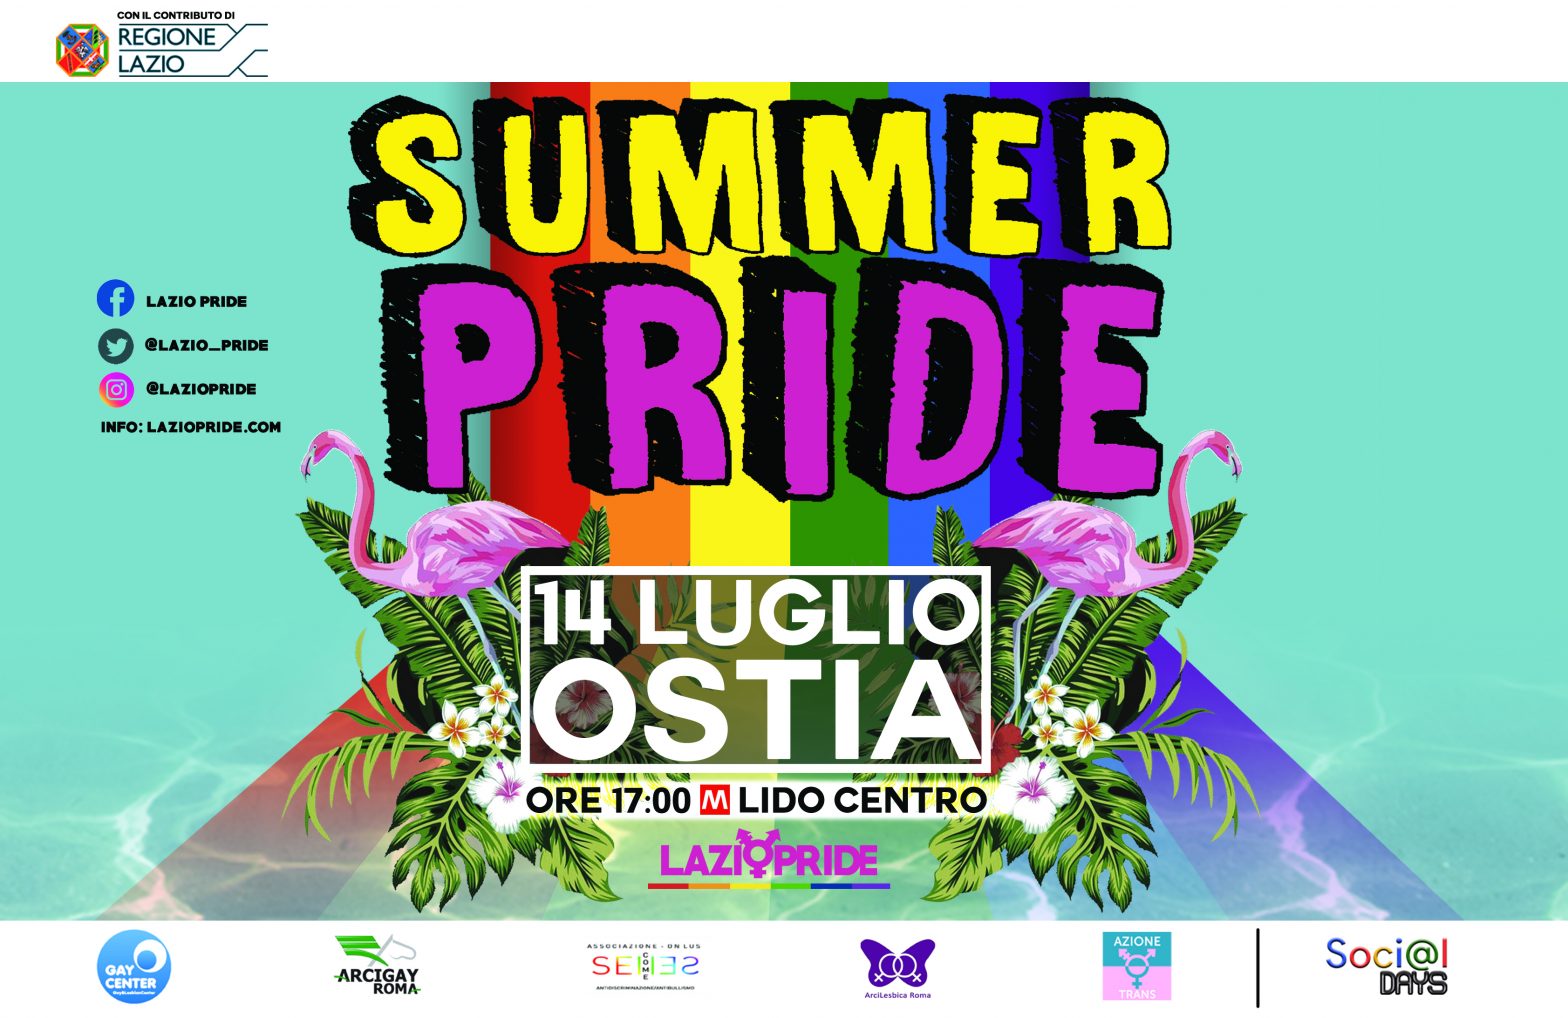 Lazio Pride: Federica Angeli e Vladimir Luxuria ospiti d’onore. Sarà un pride contro le mafie e per i diritti